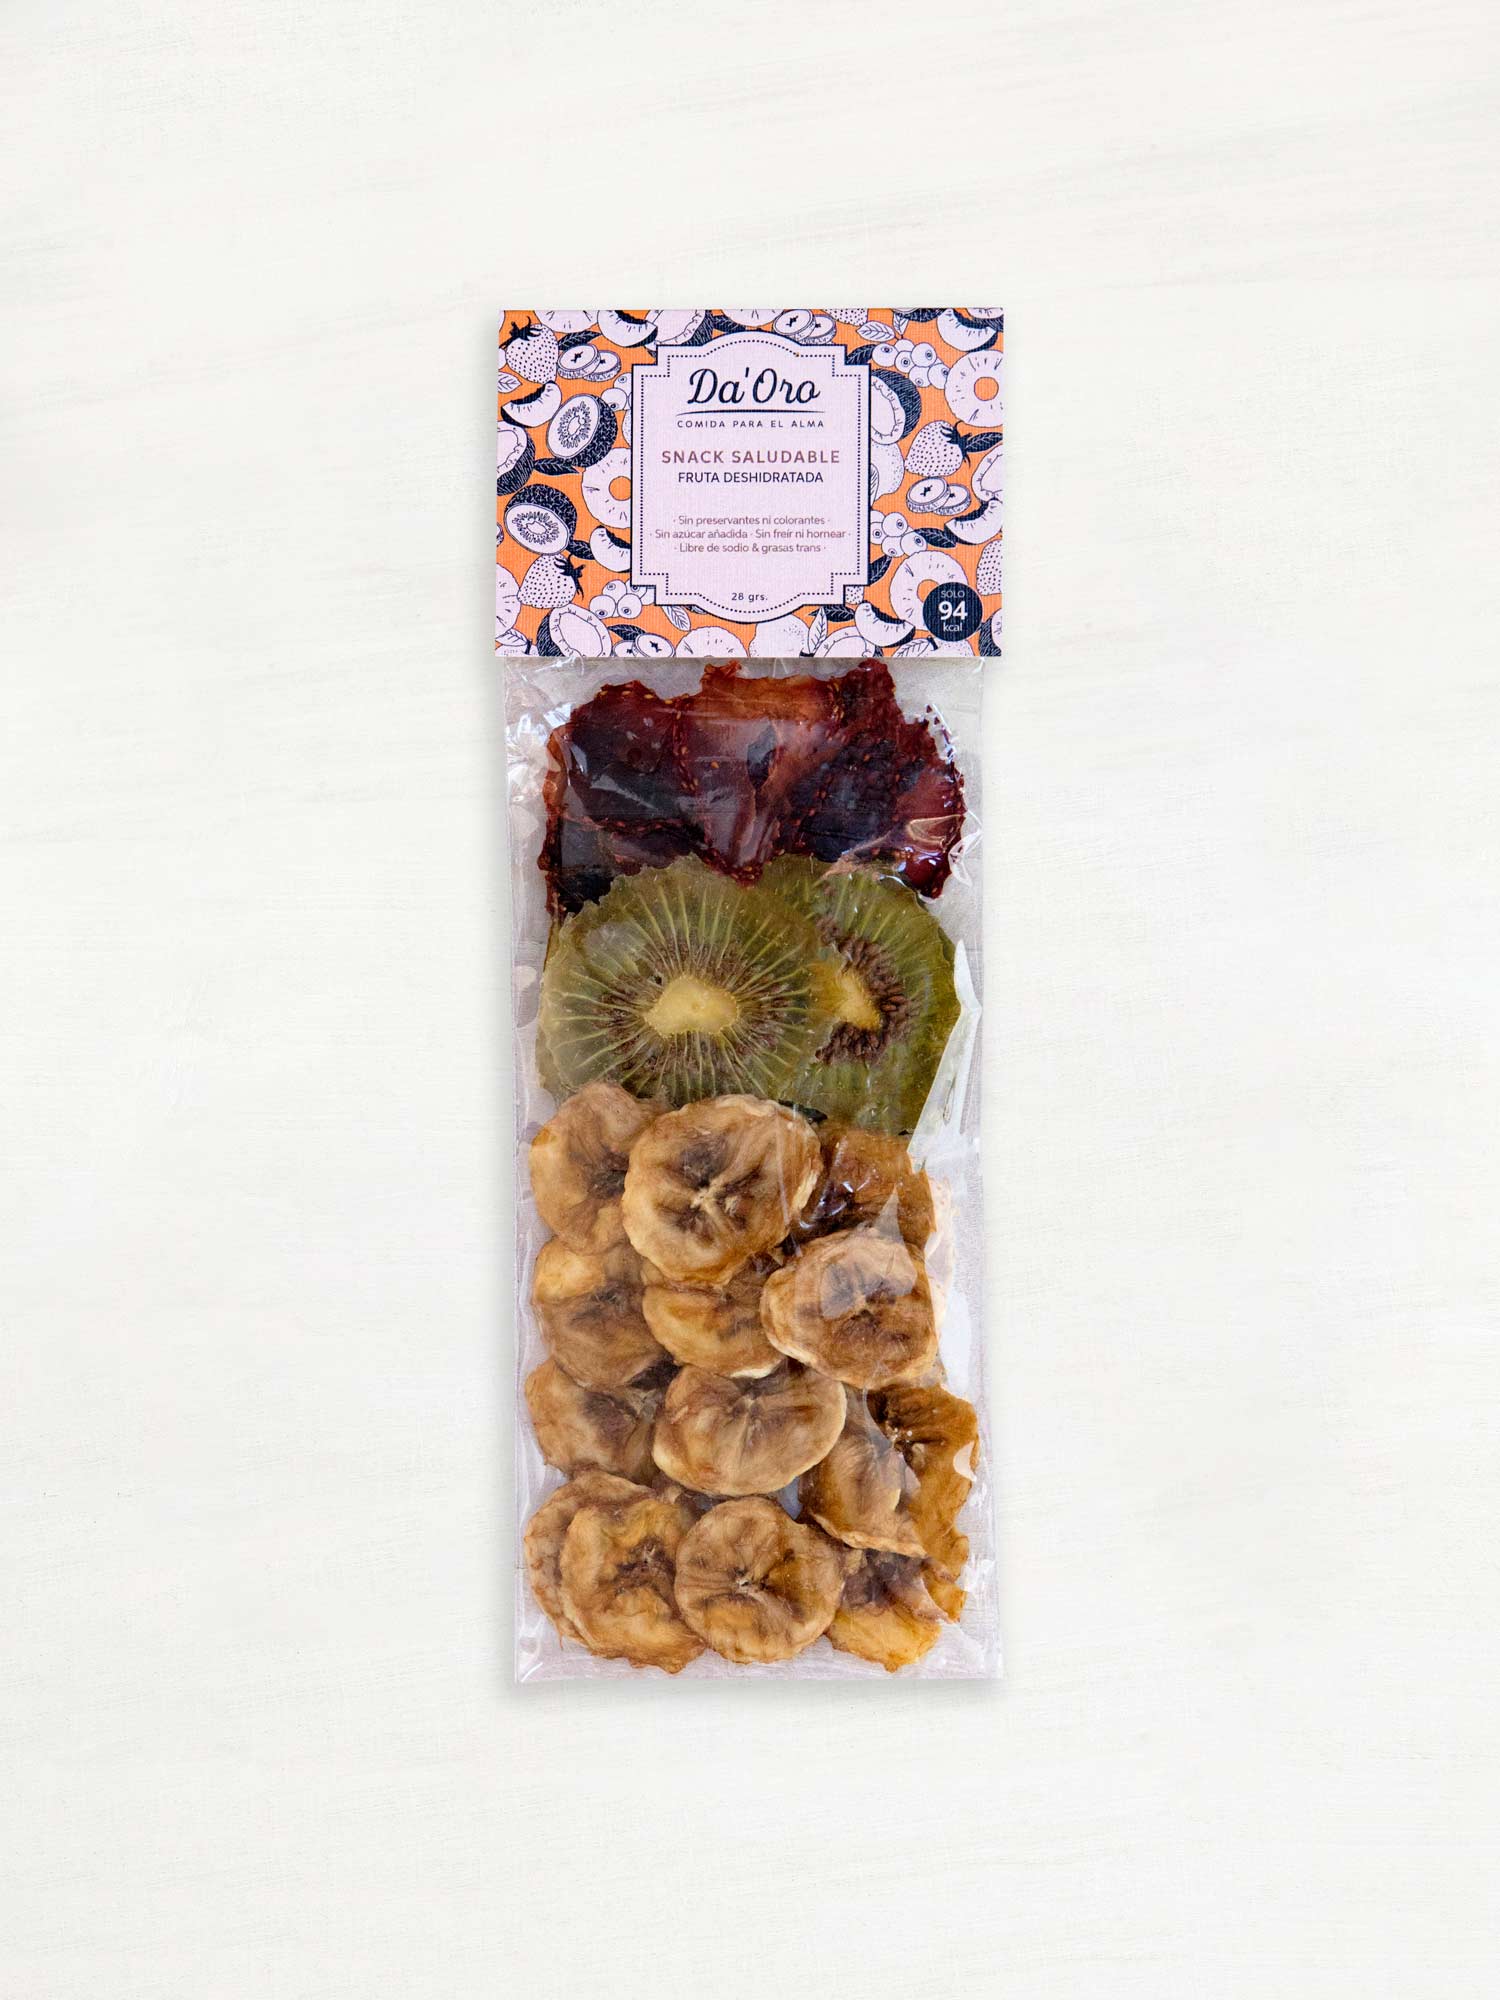 Bolsa con frutilla, kiwi y plátano deshidratado en formato snack marca Da'Oro